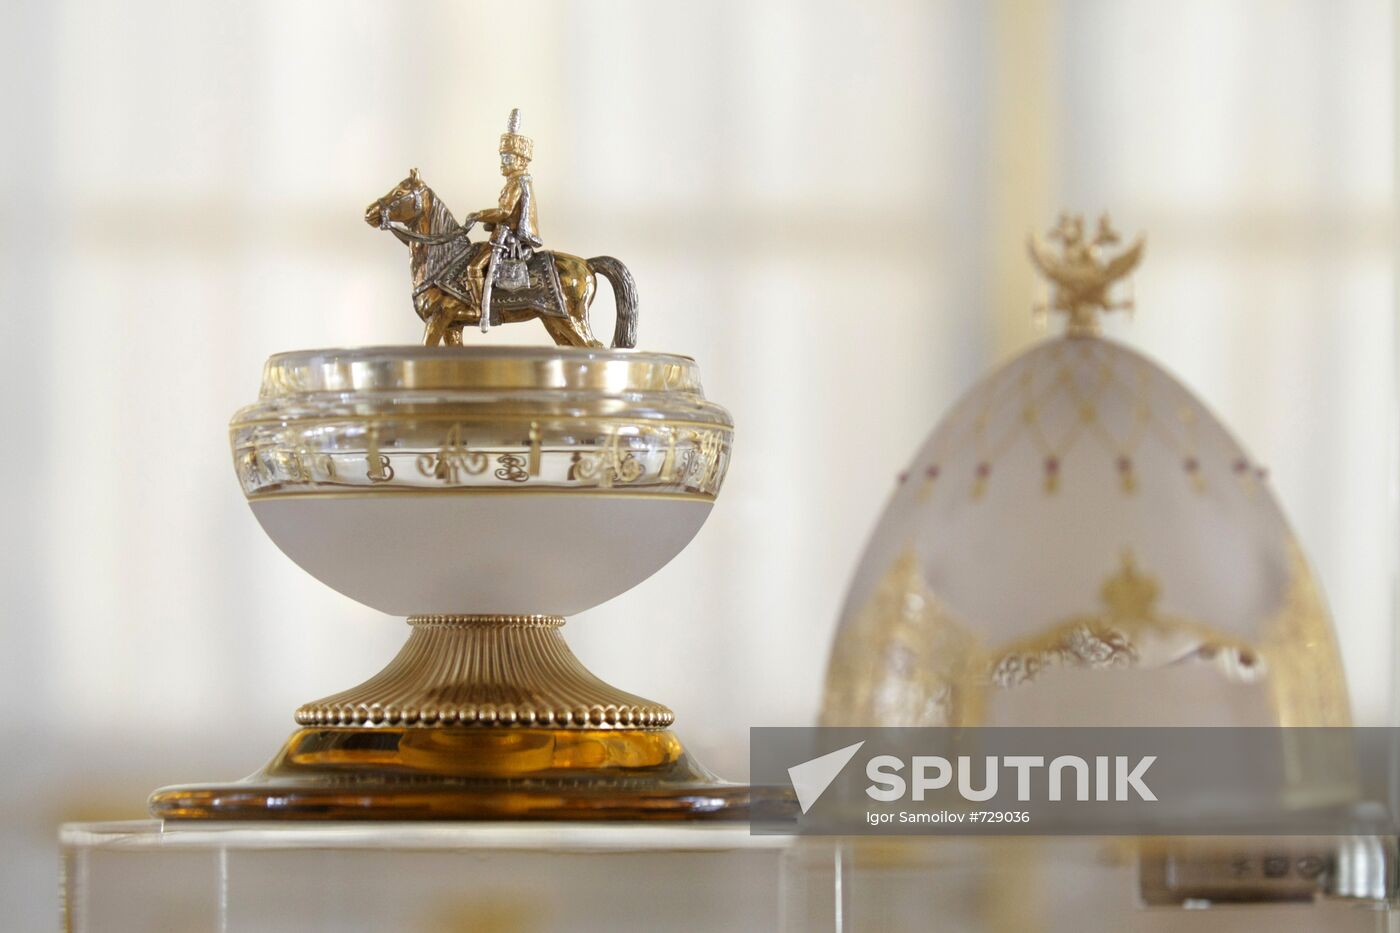 Theo Fabergé's crystal egg handed over to Tsarskoye Selo